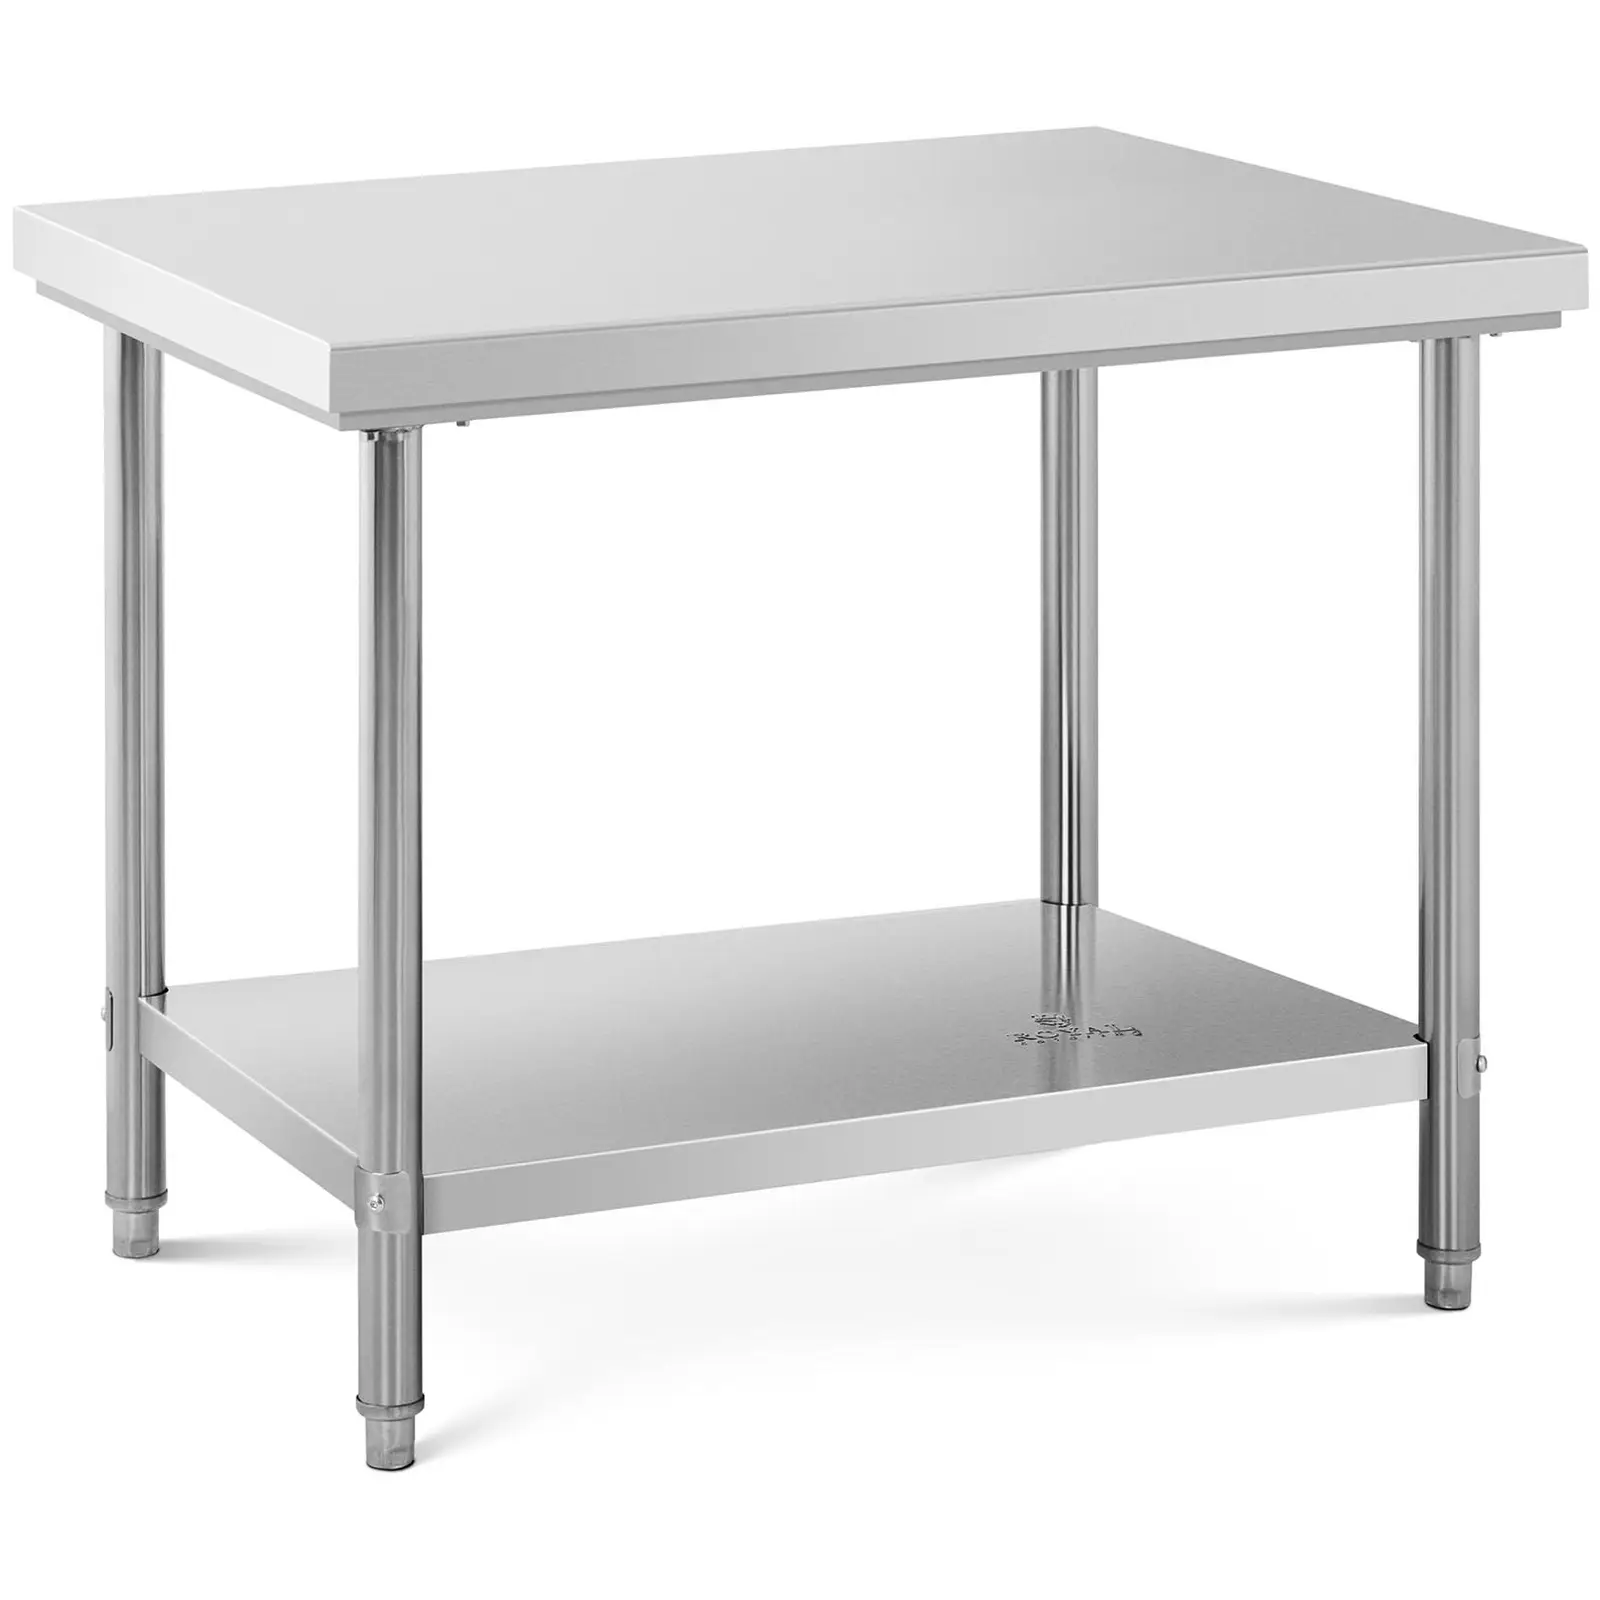 Nerezový pracovní stůl 100 x 70 cm nosnost 190 kg - Pracovní stoly Royal Catering